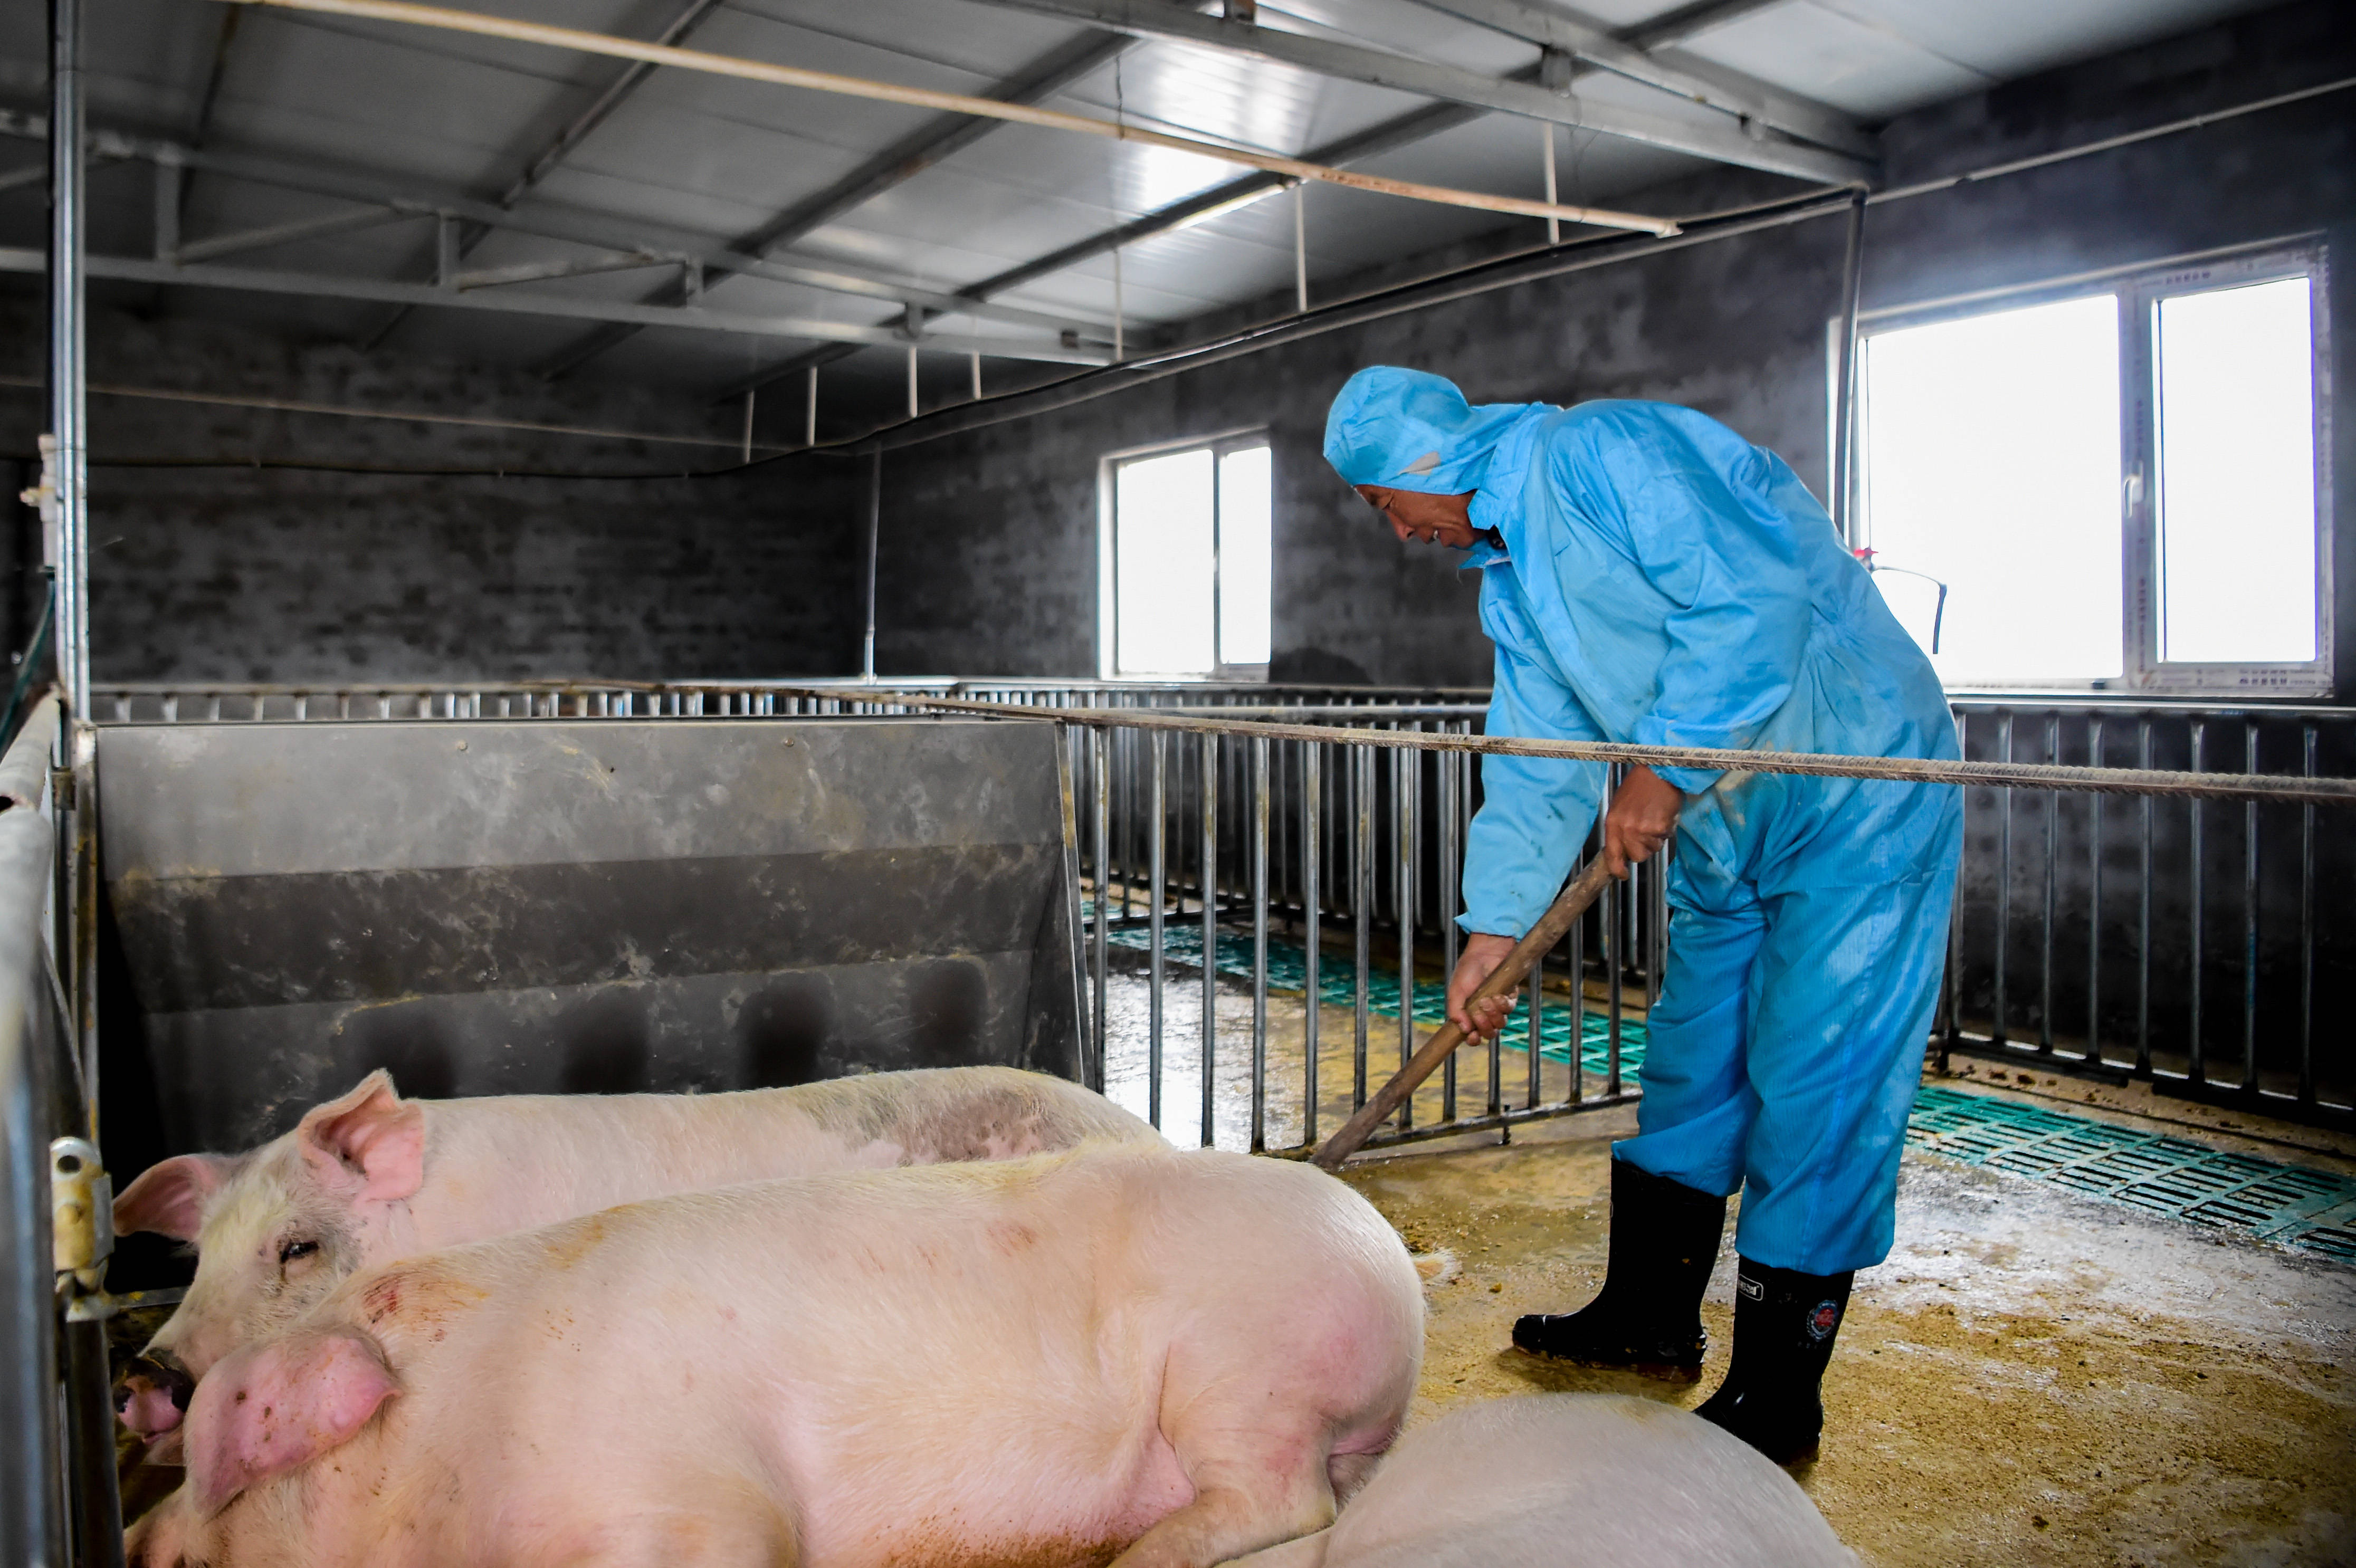 内蒙古伊金霍洛旗:推行生猪标准化养殖 改善村容村貌